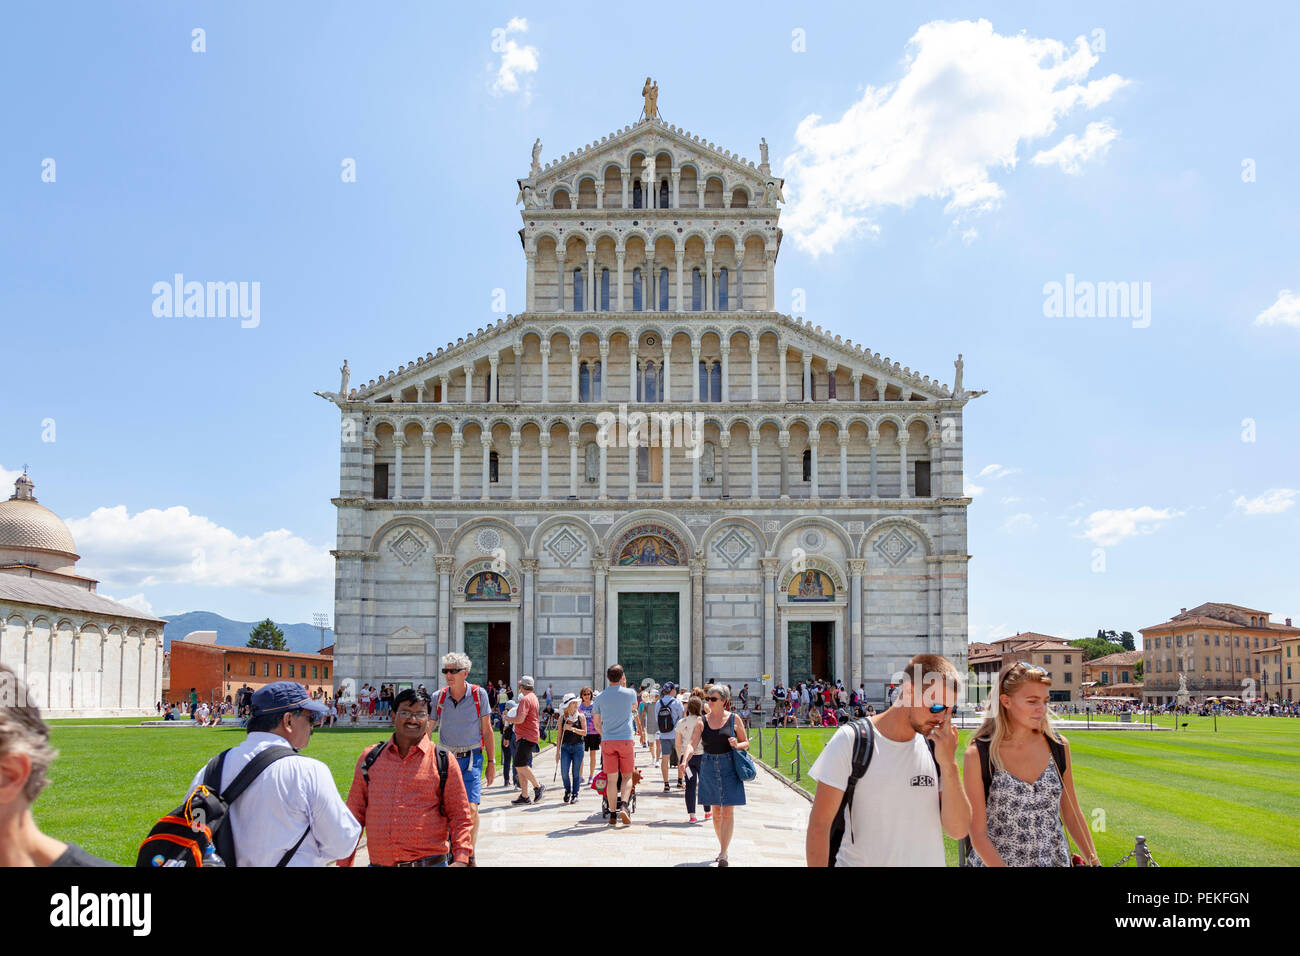 The frontage of the Cathedral of Pisa with its dazzling cladding of marble. La façade de la Cathédrale de Pise éclatante avec son revêtement de marbre Stock Photo